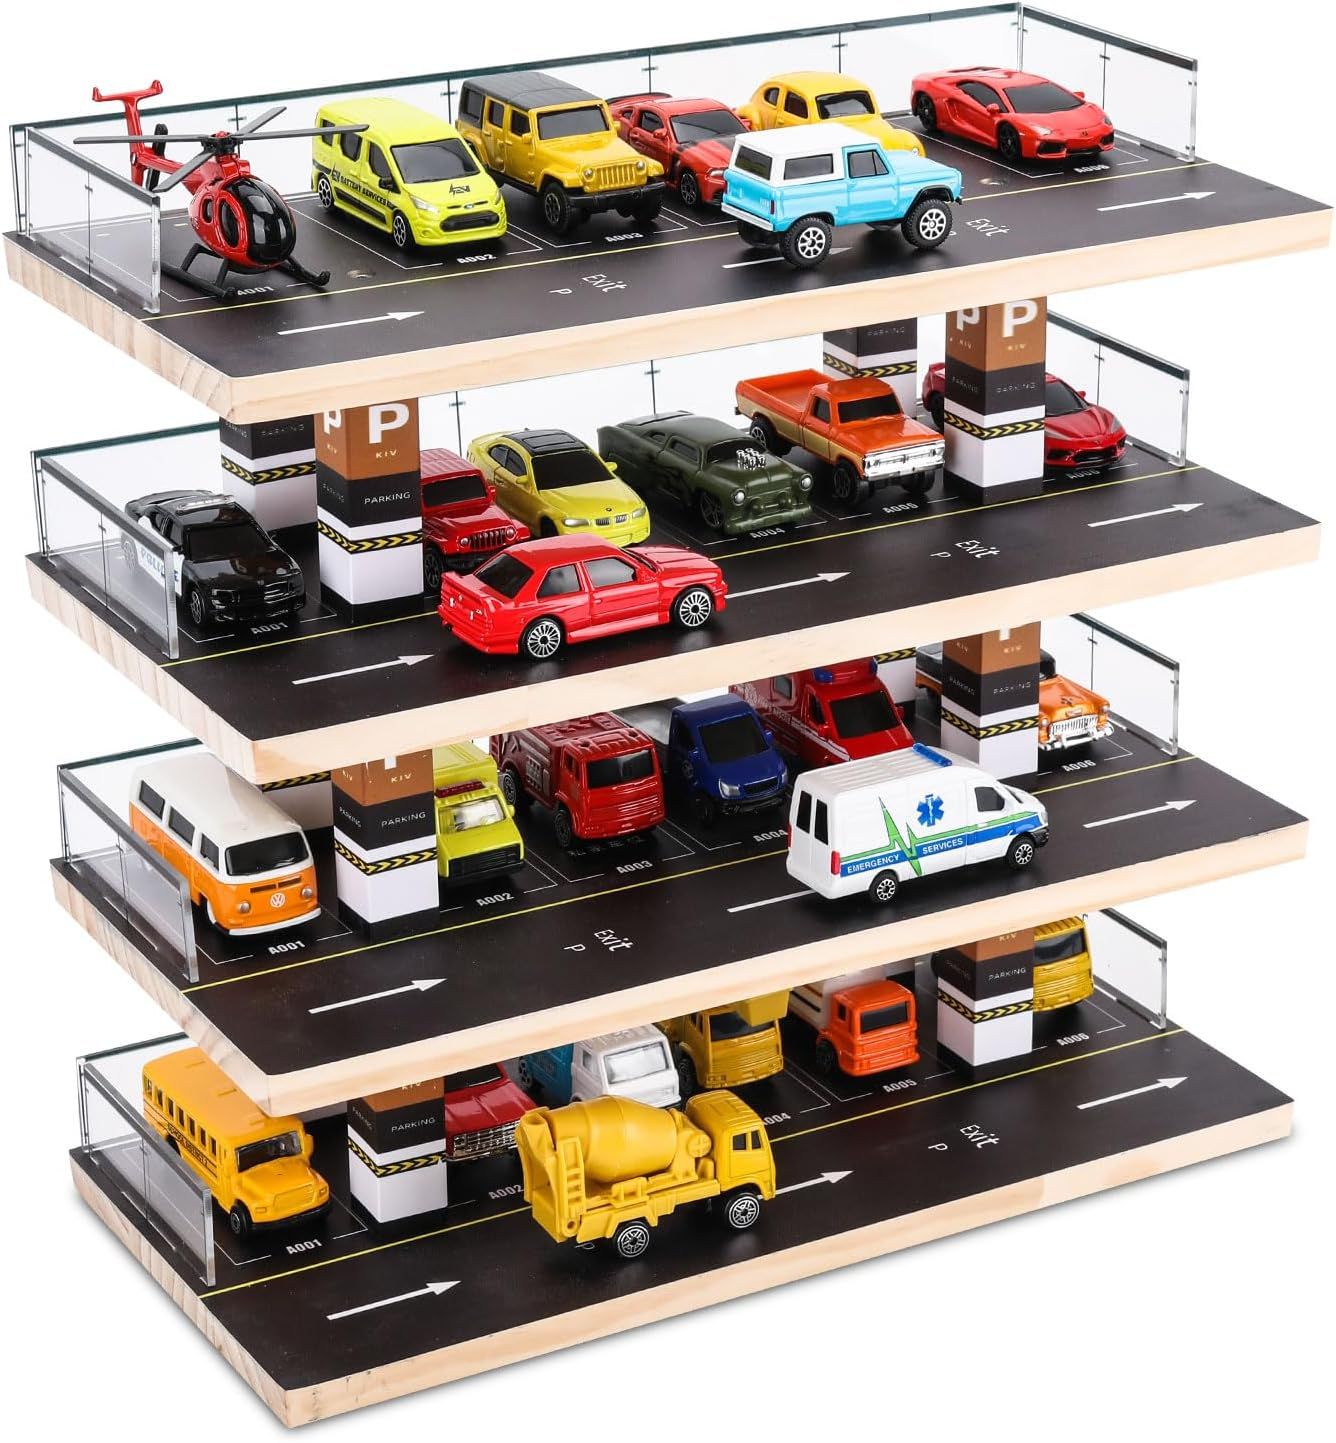 Hot Wheels & Matchbox Display Case, 1/64 Scale Diecast Toy Car Storage, Parking Garage Diorama - ... | Amazon (US)